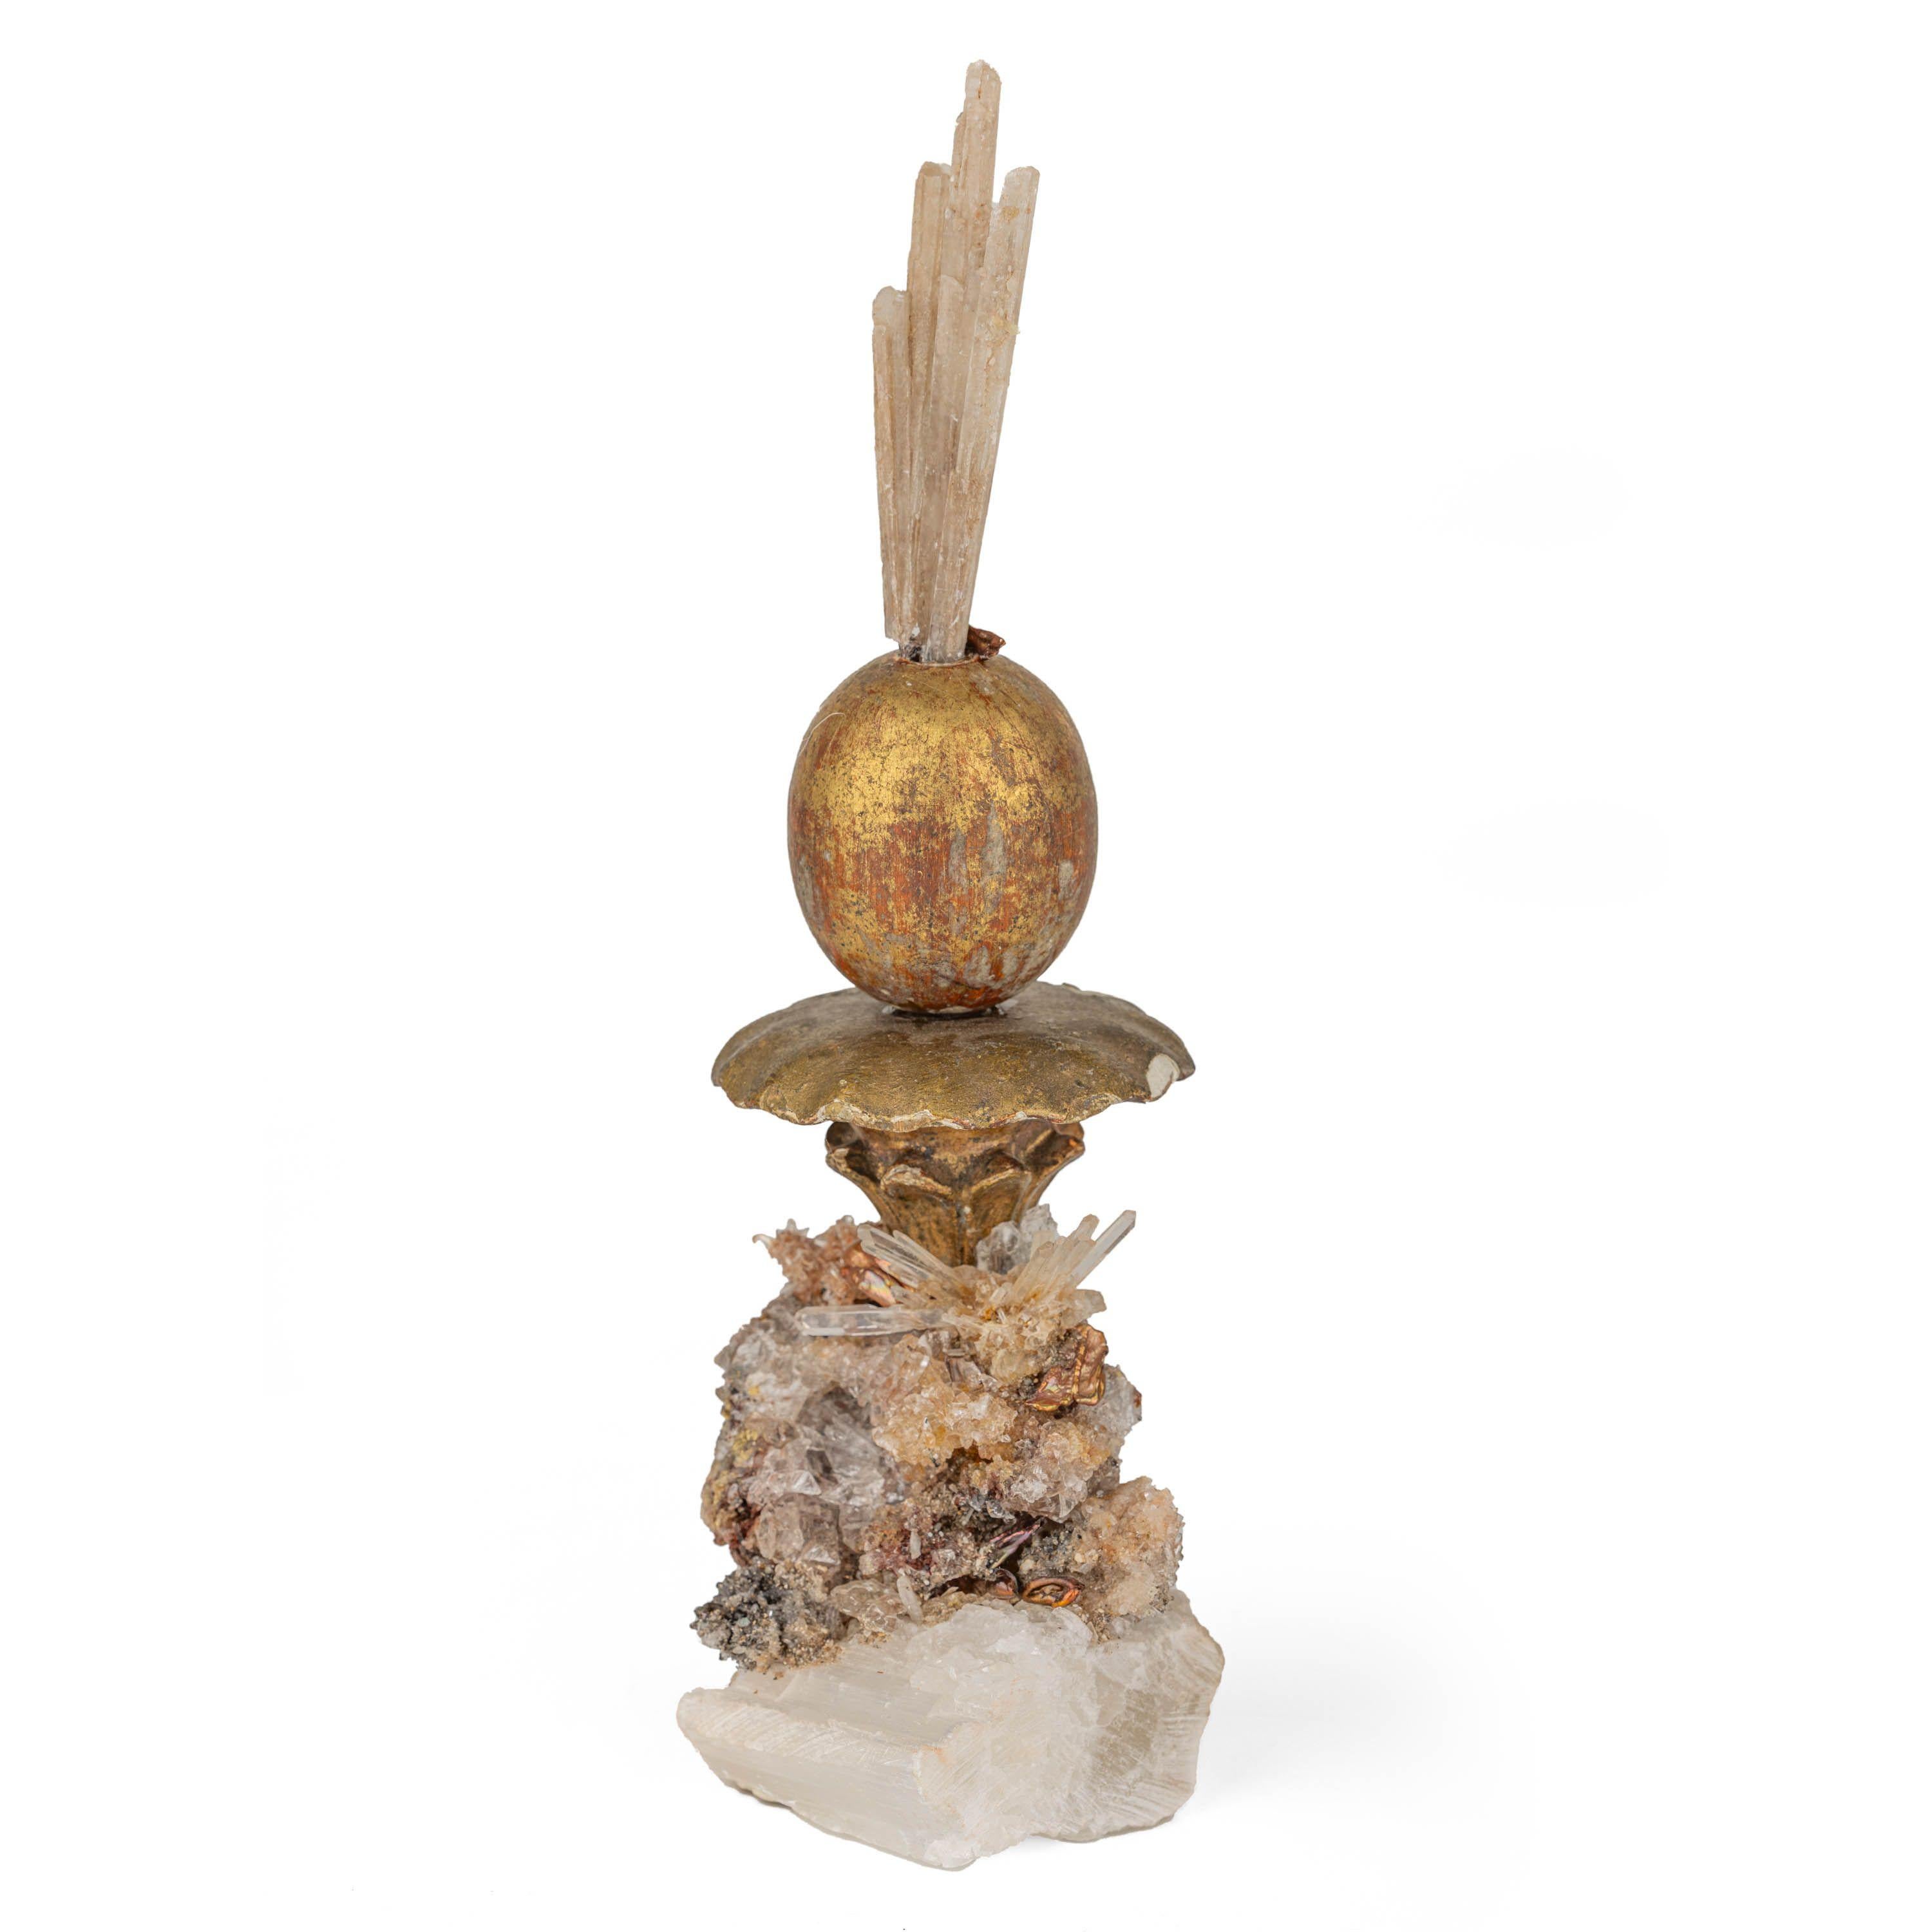 Fragments dorés des 18e et 19e siècles. L'orbe est en bois sculpté et doré à l'eau, surmonté d'une fleur en plâtre doré. Tous sont agrémentés de perles de rocaille naturelles, de cristal de roche et de fragments de sélénite. La Nature est un beau